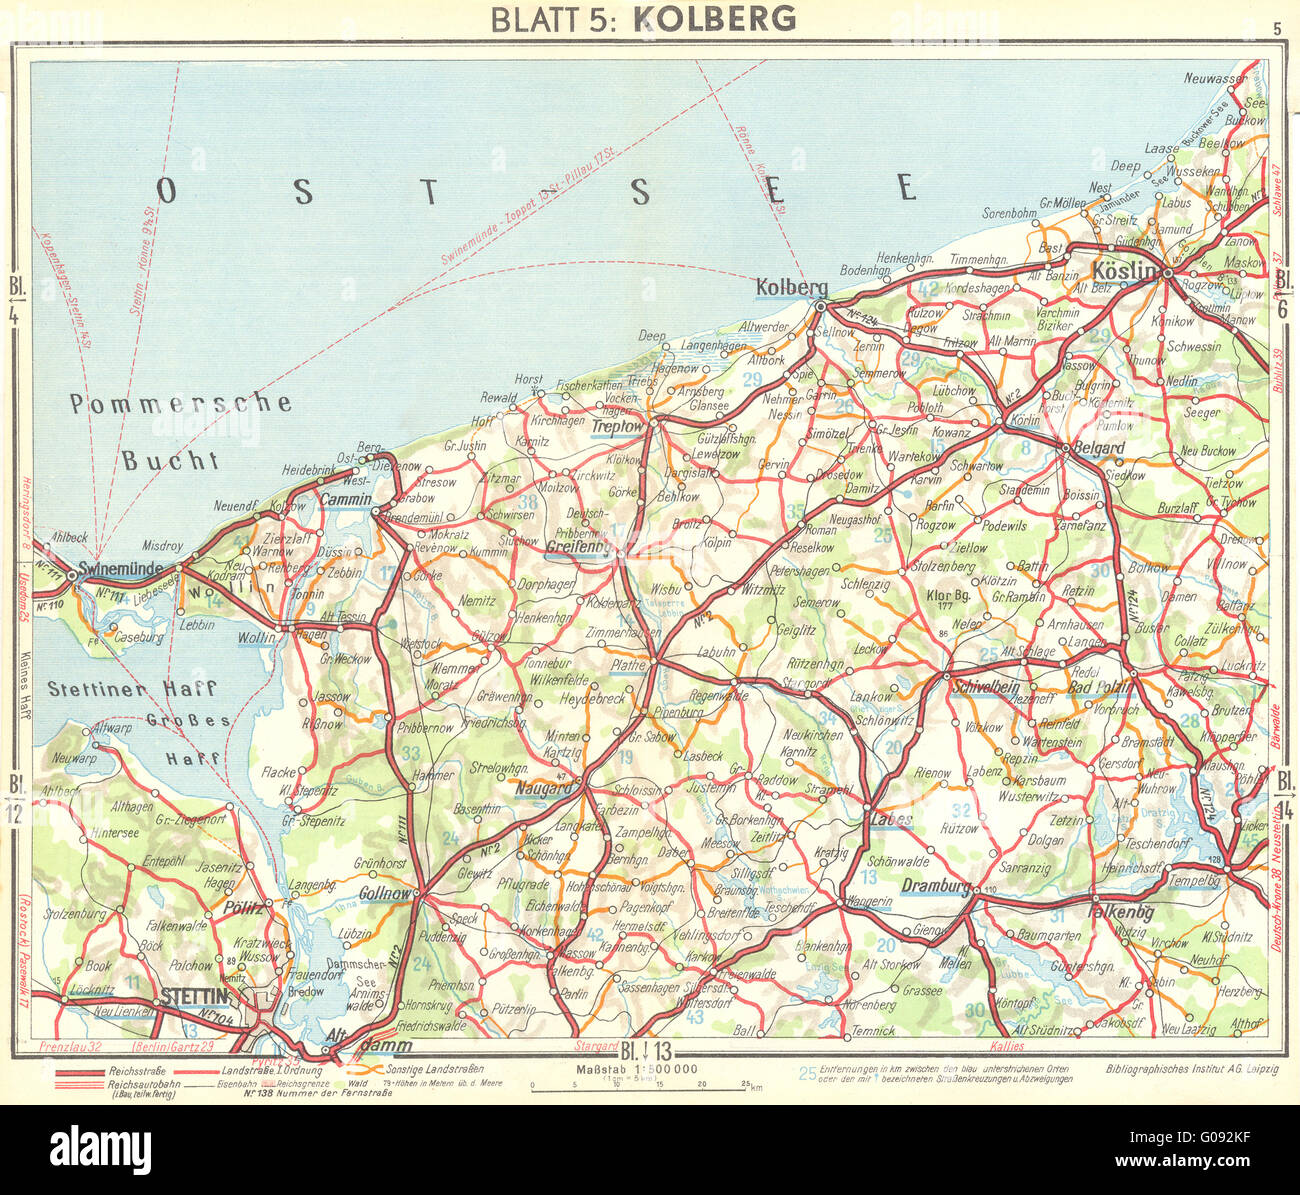 POLAND: Kolobrzeg, 1936 vintage map Stock Photo